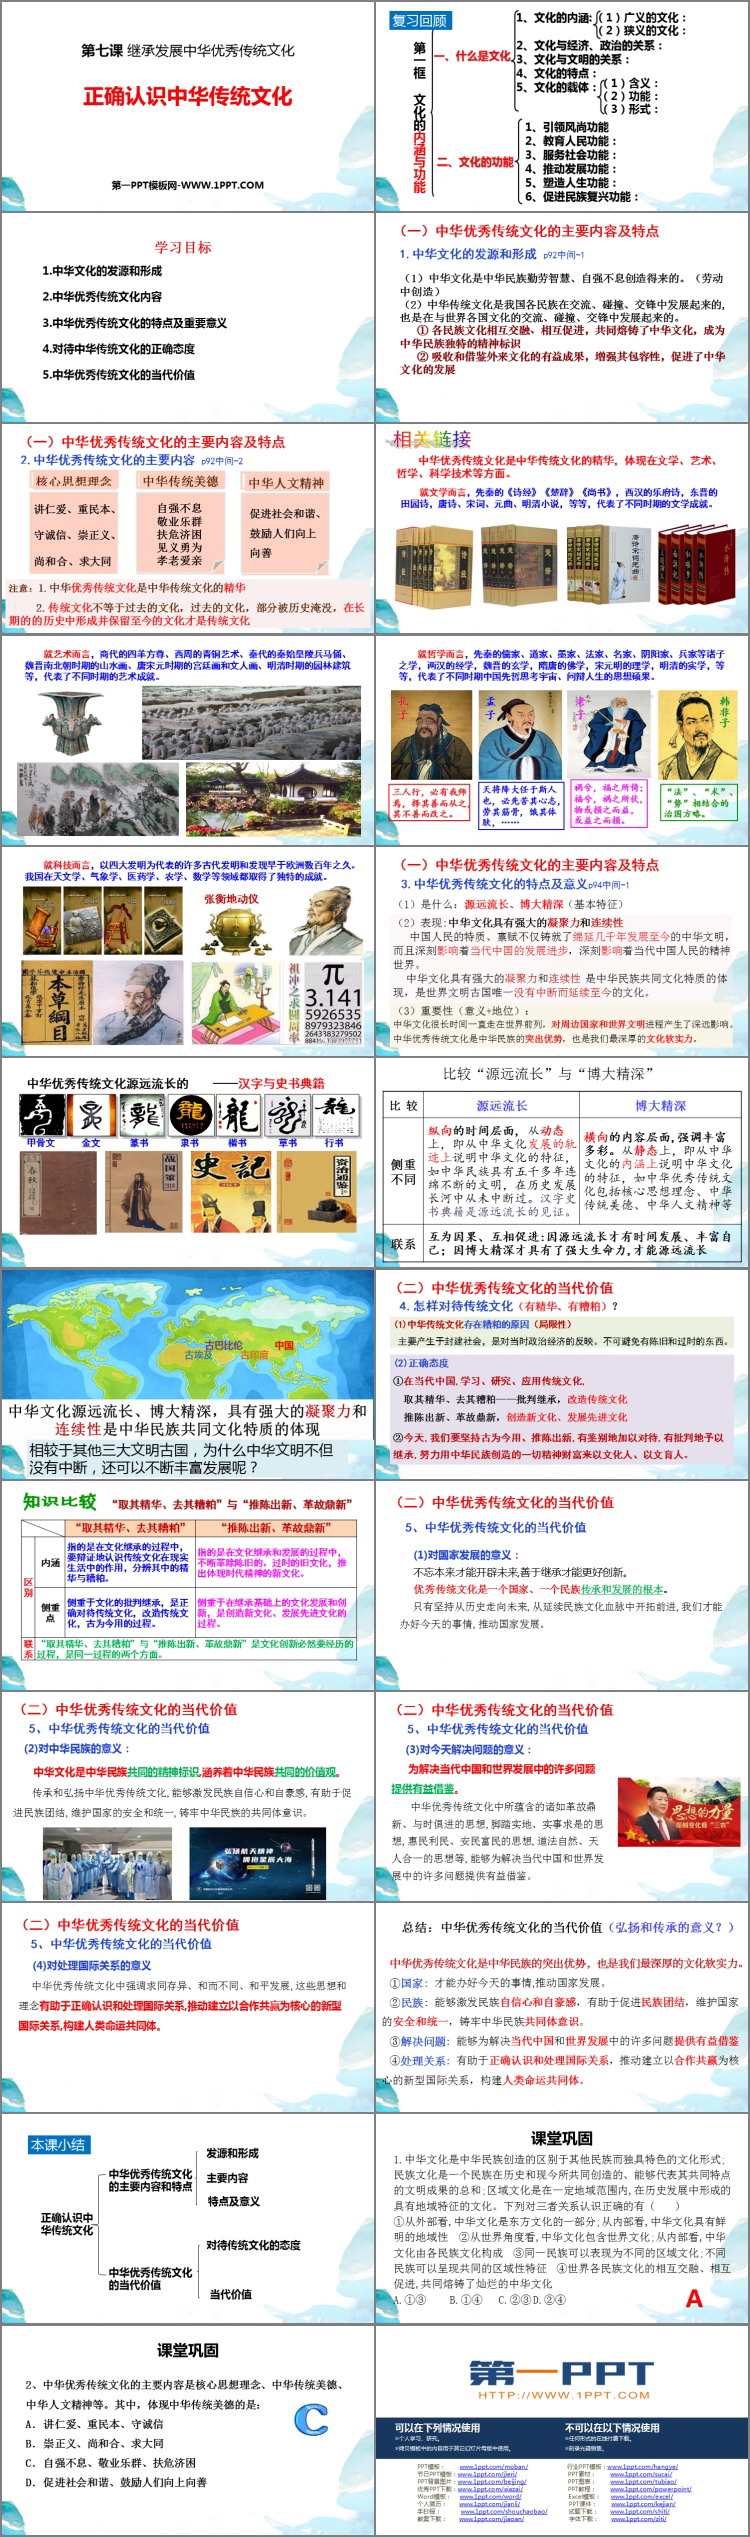 《正确认识中华传统文化》继承发展中华优秀传统文化PPT下载-预览图02